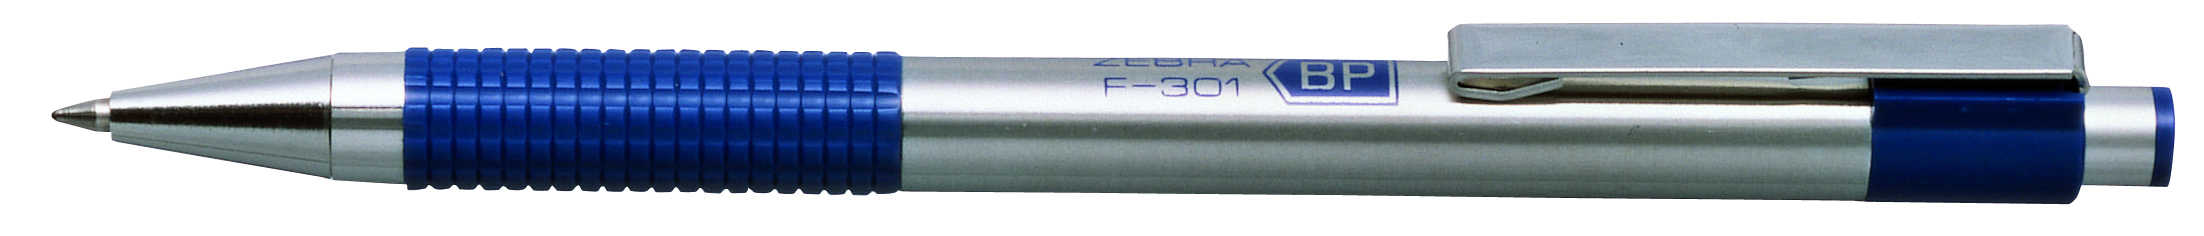 F-301 ballpoint pen